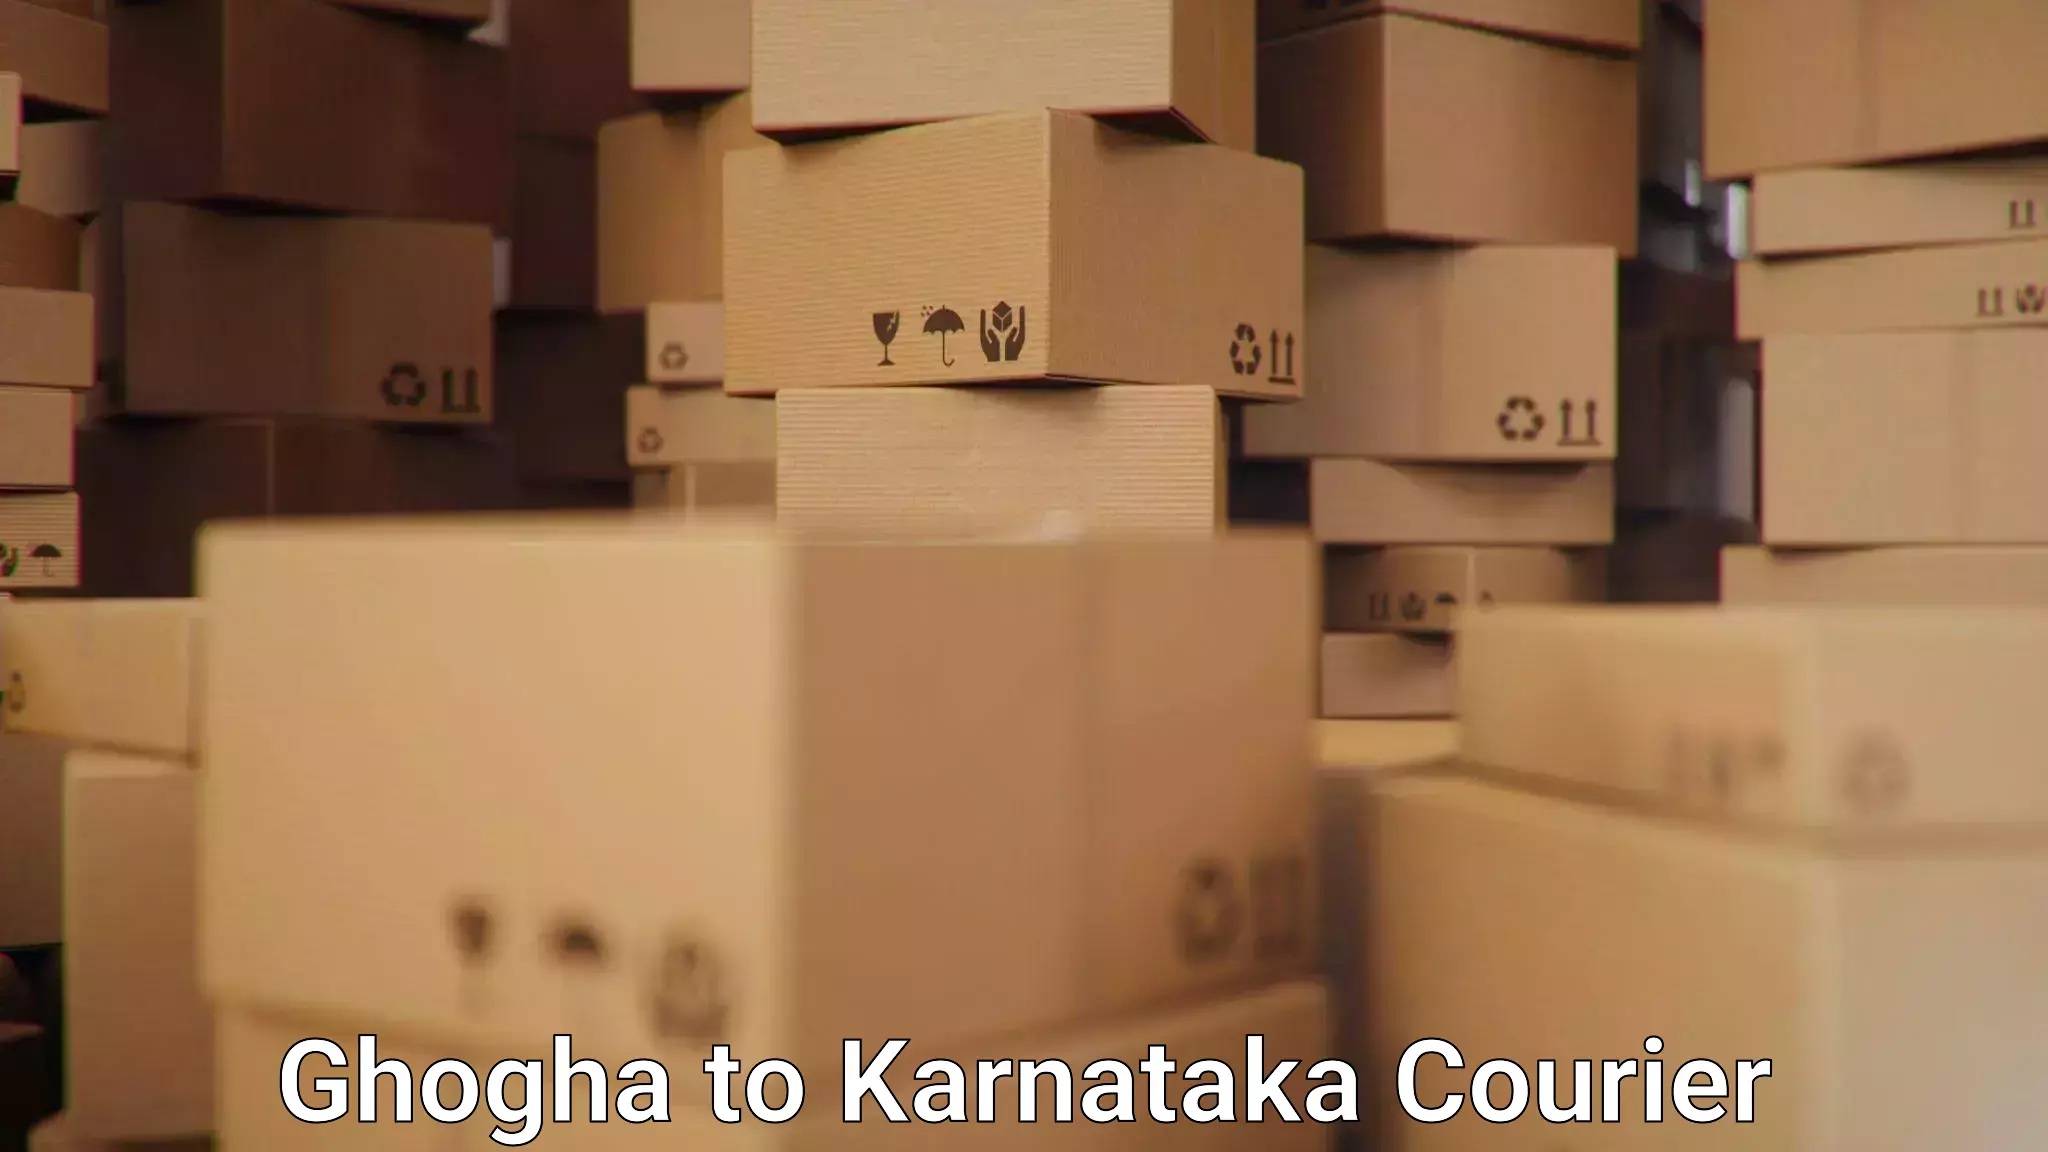 Logistics and distribution Ghogha to Karnataka